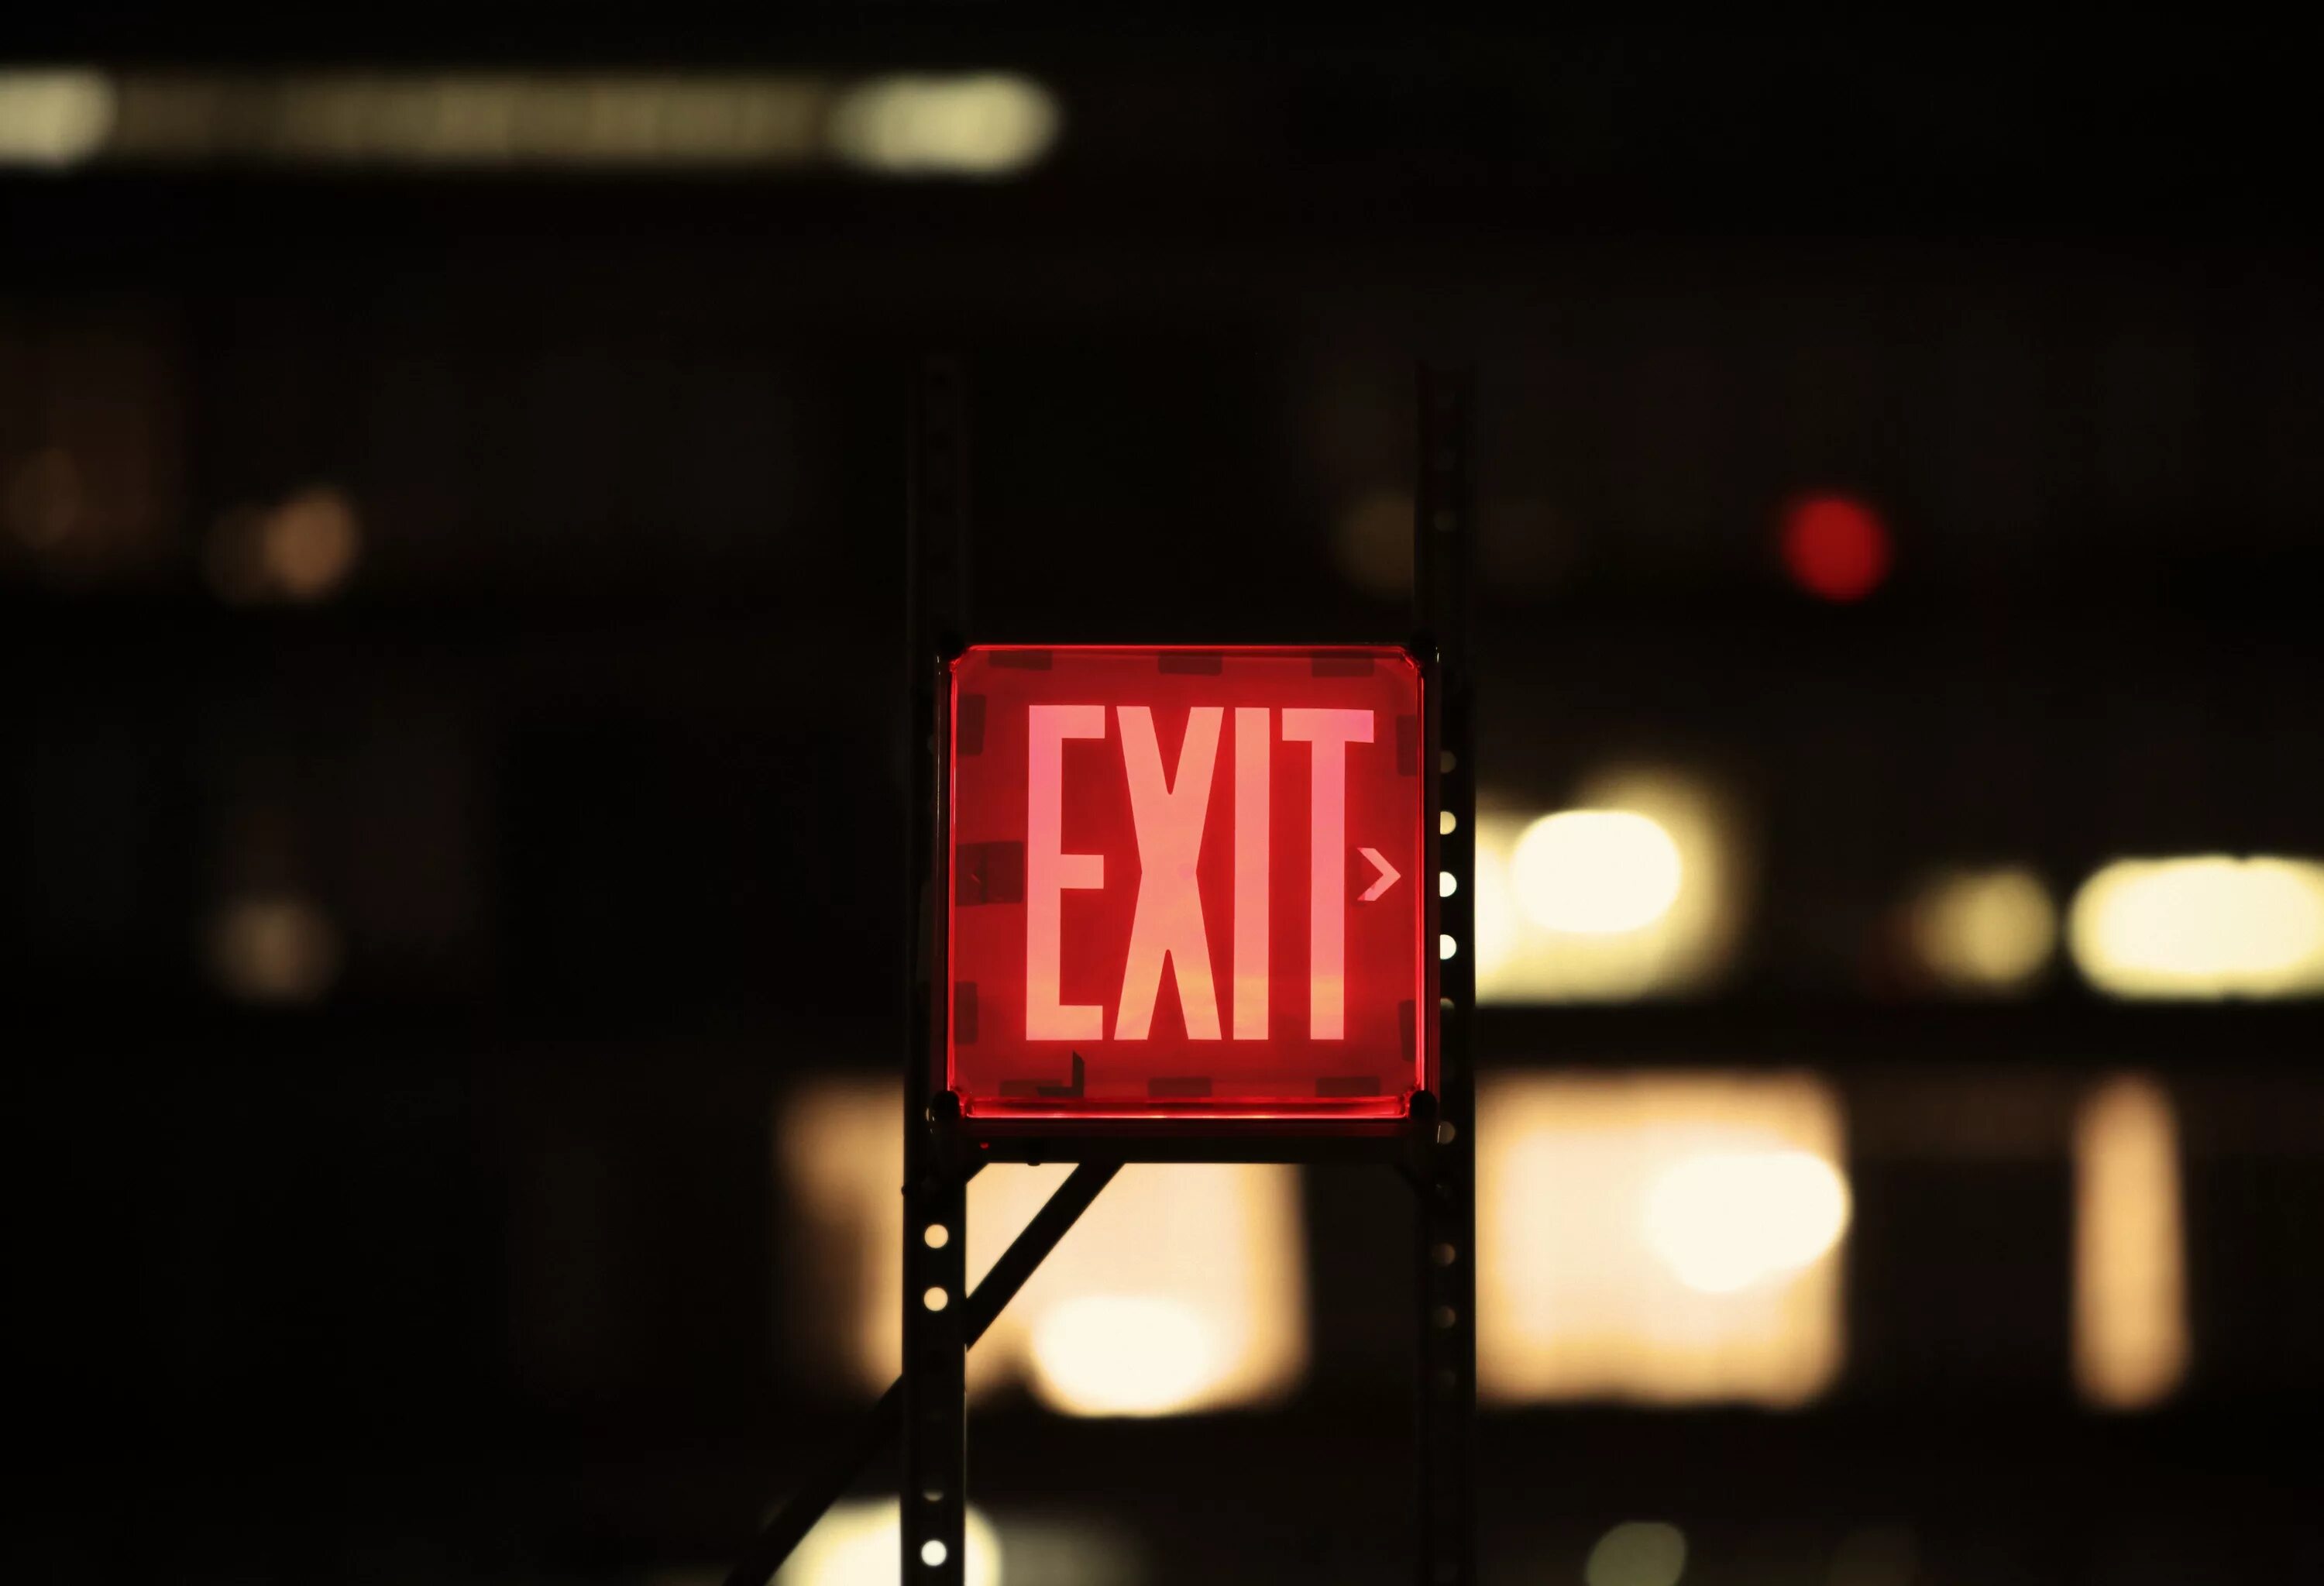 Вывеска exit. Табличка exit красная. Неоновая вывеска exit. Красный цвет для таблички.